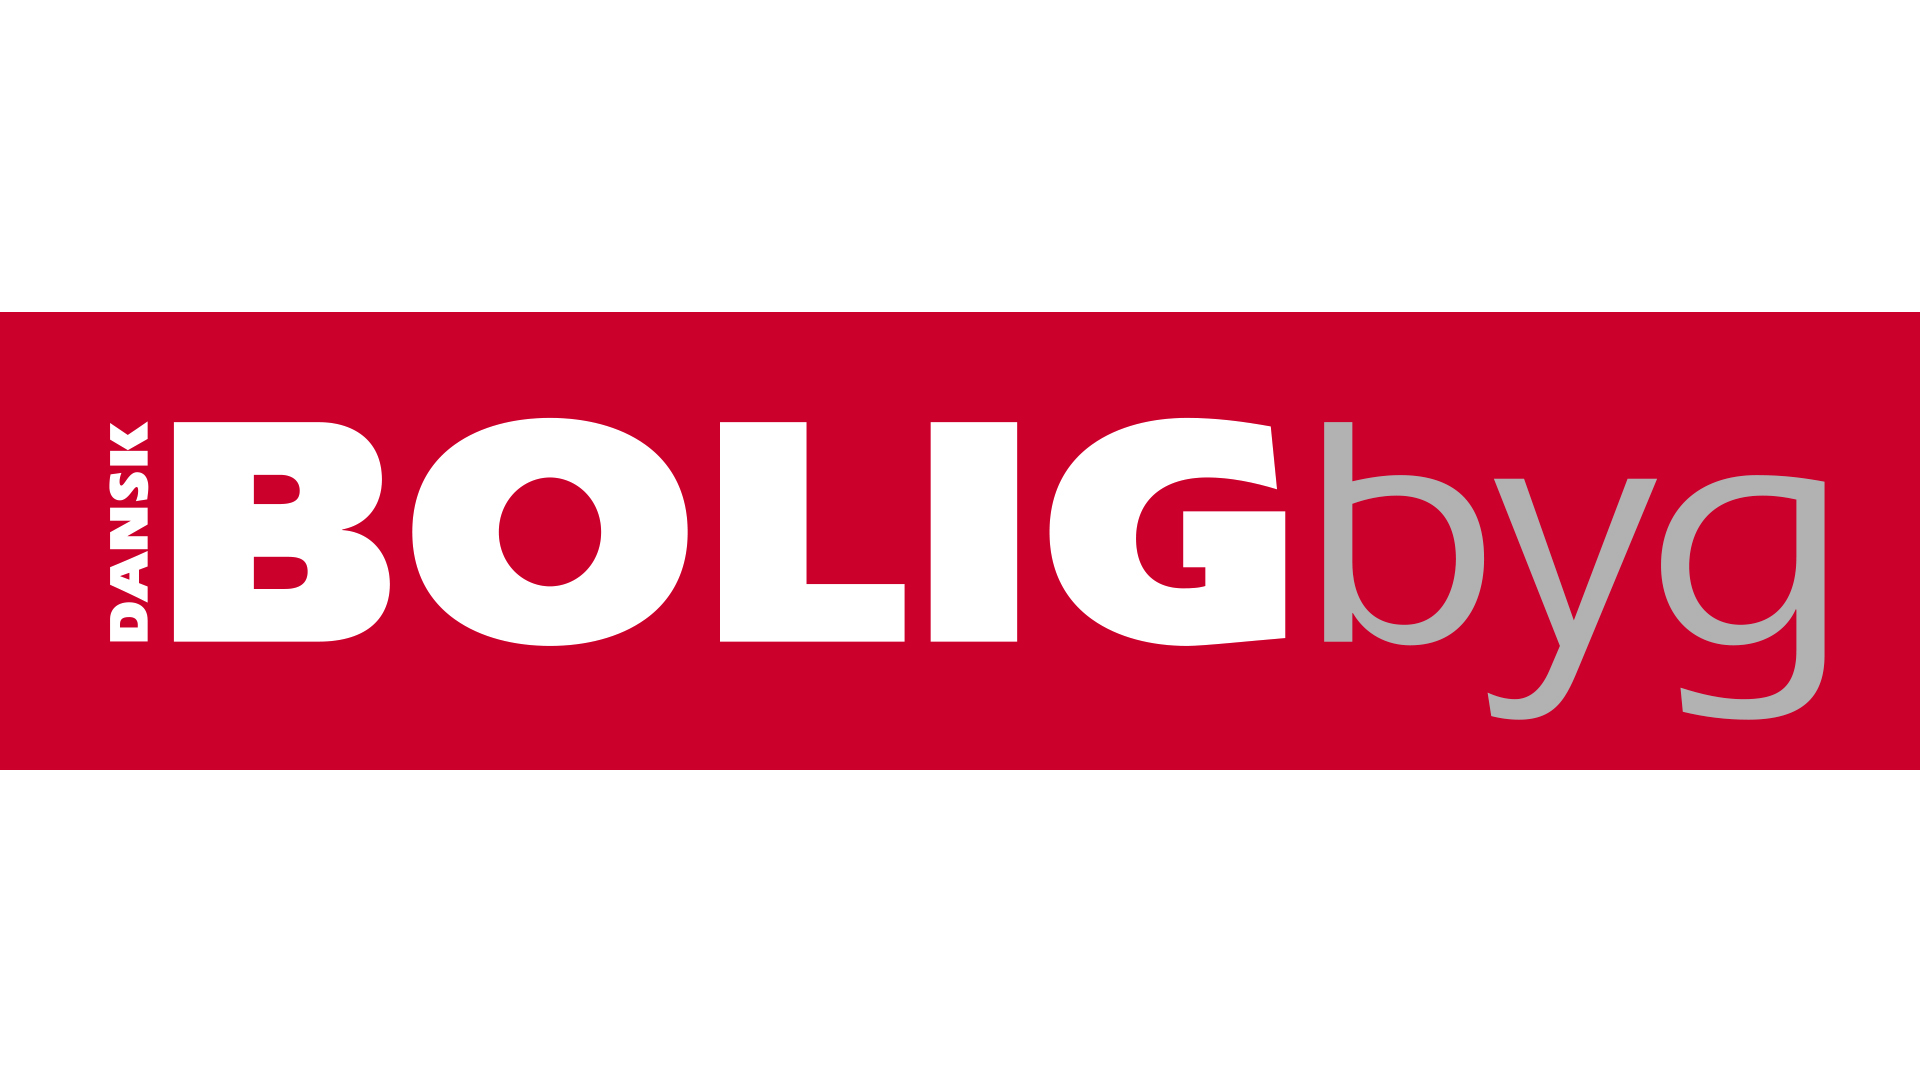 dansk_boligbyg_logo_1920x1080px72ppi